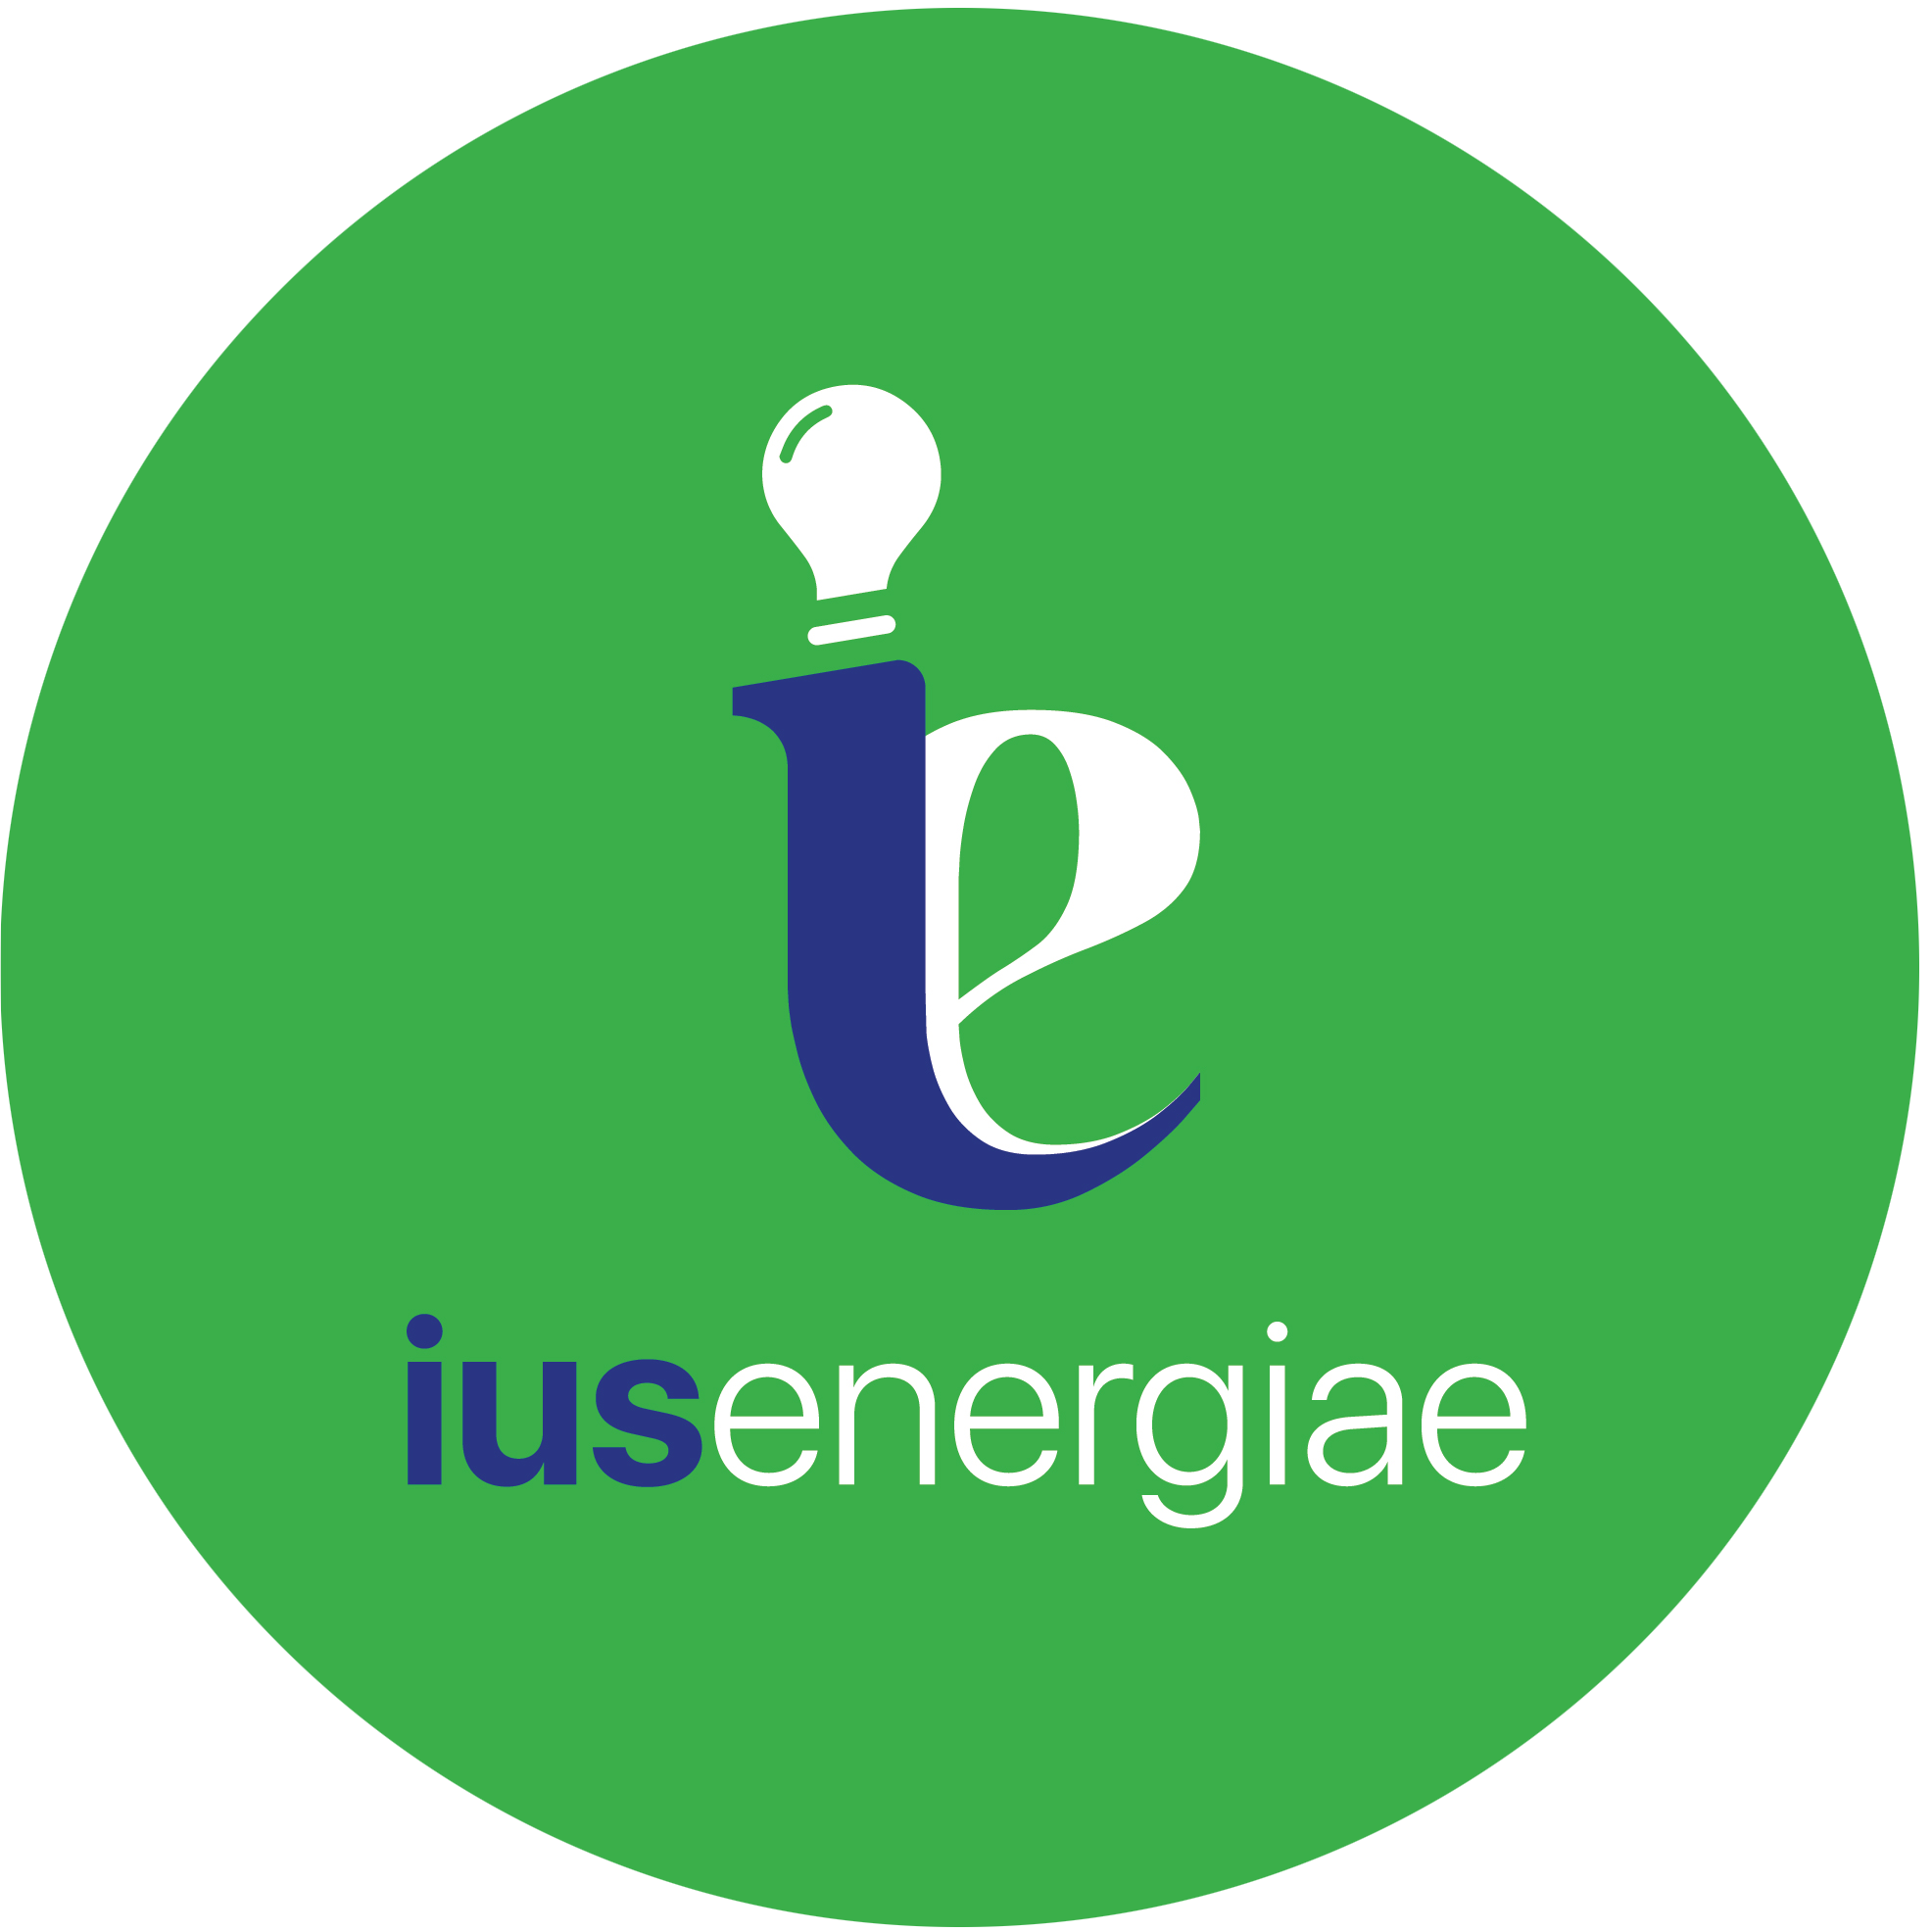 IusEnergiae logo